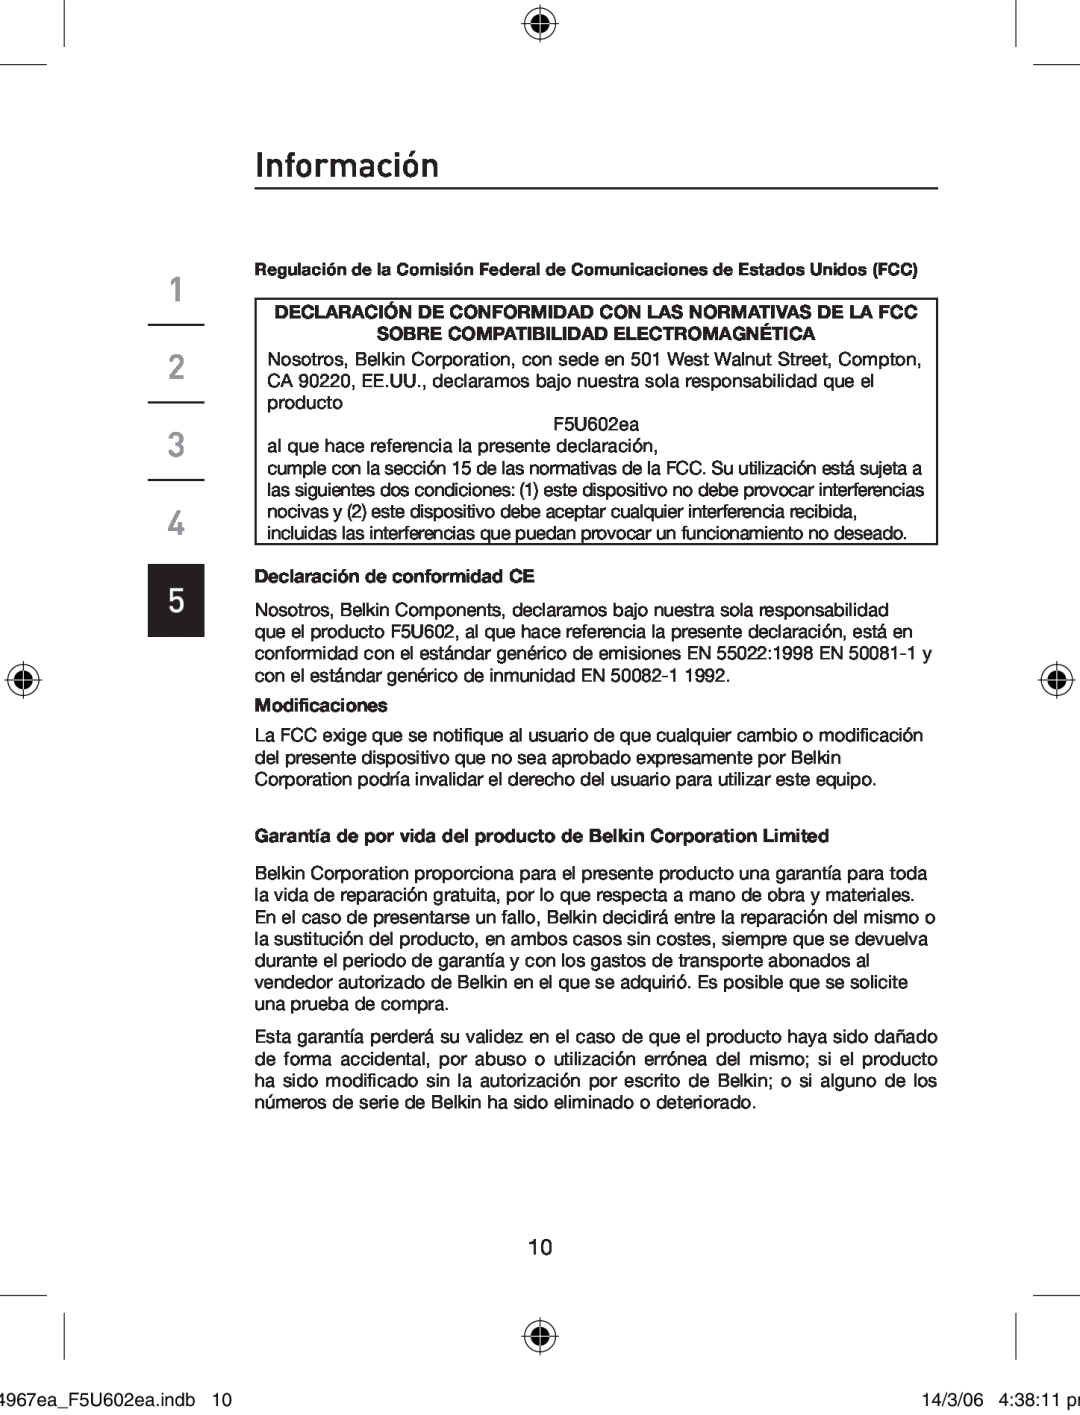 Belkin F5U602EA Información, Declaración De Conformidad Con Las Normativas De La Fcc, Declaración de conformidad CE 